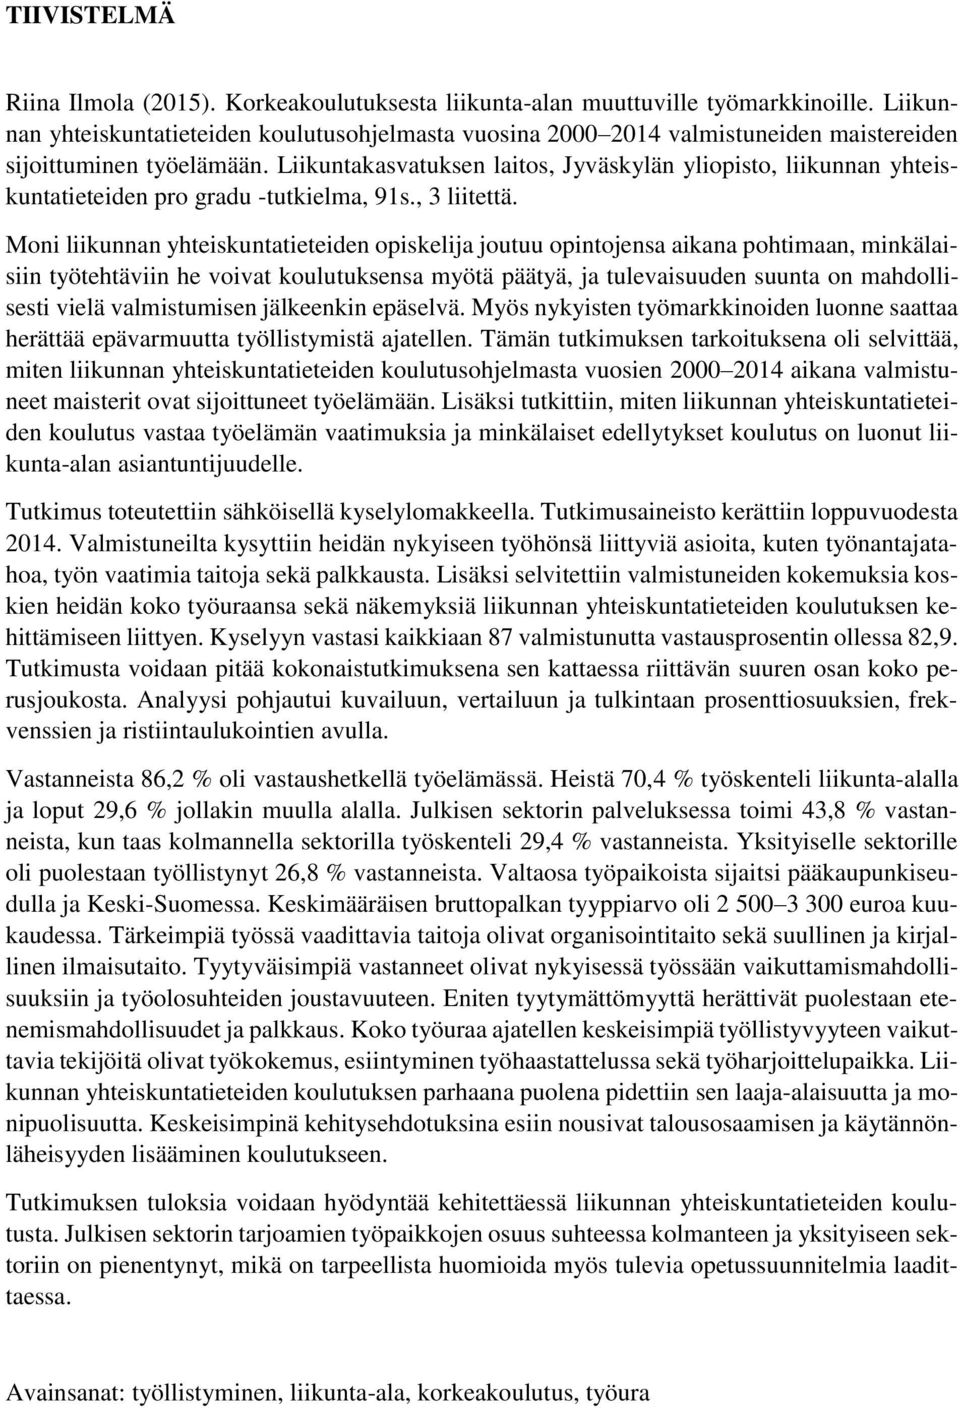 Liikuntakasvatuksen laitos, Jyväskylän yliopisto, liikunnan yhteiskuntatieteiden pro gradu -tutkielma, 91s., 3 liitettä.